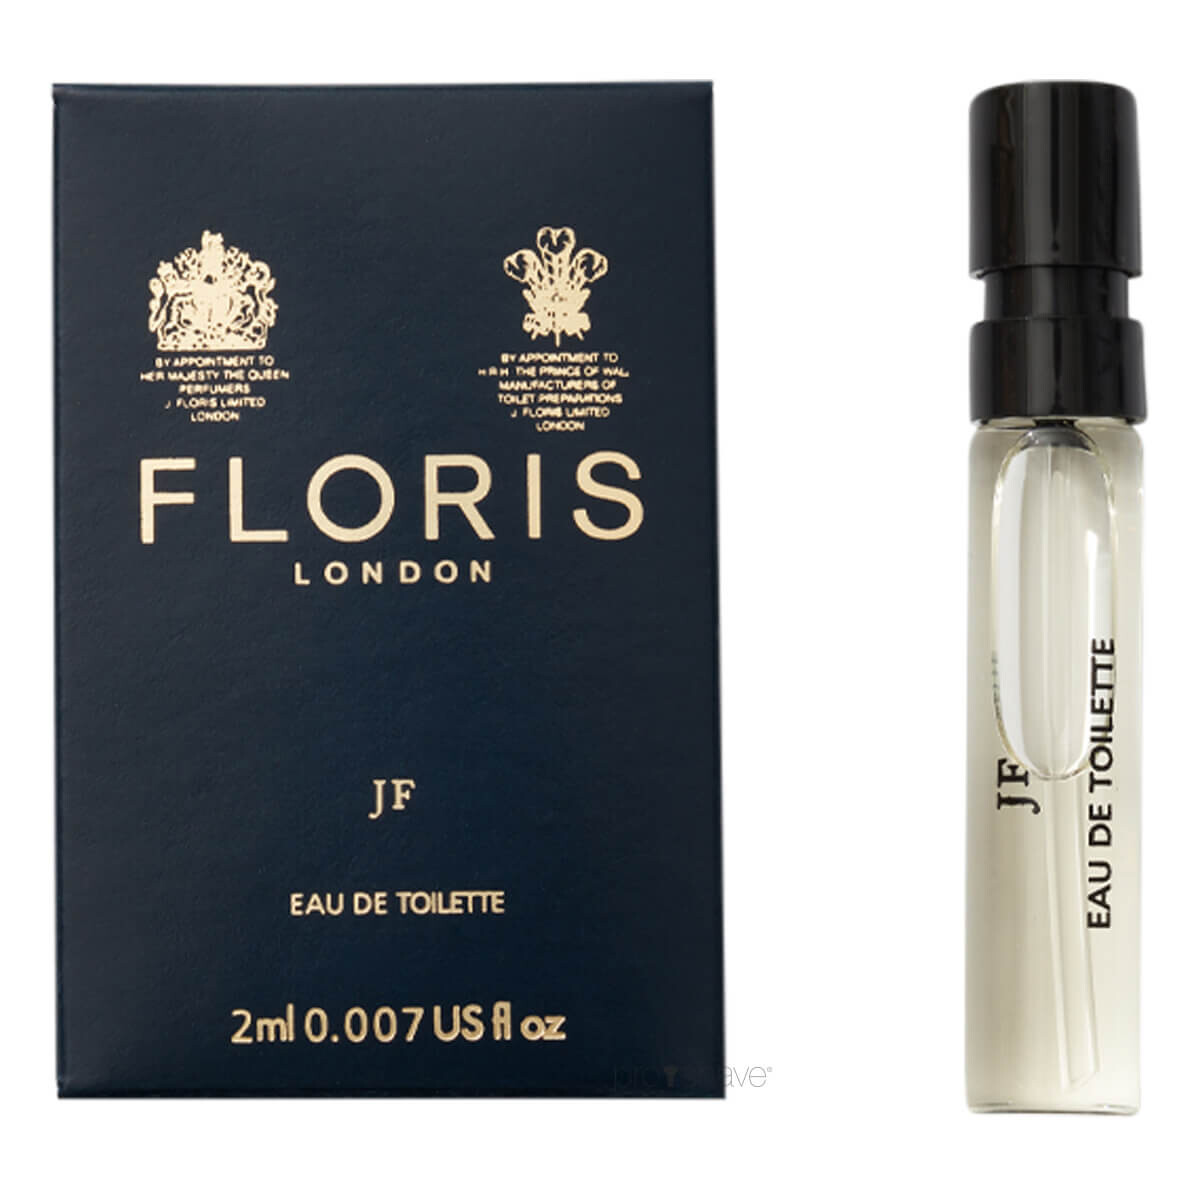 8: Floris JF, Eau de Toilette, DUFTPRØVE, 2 ml.